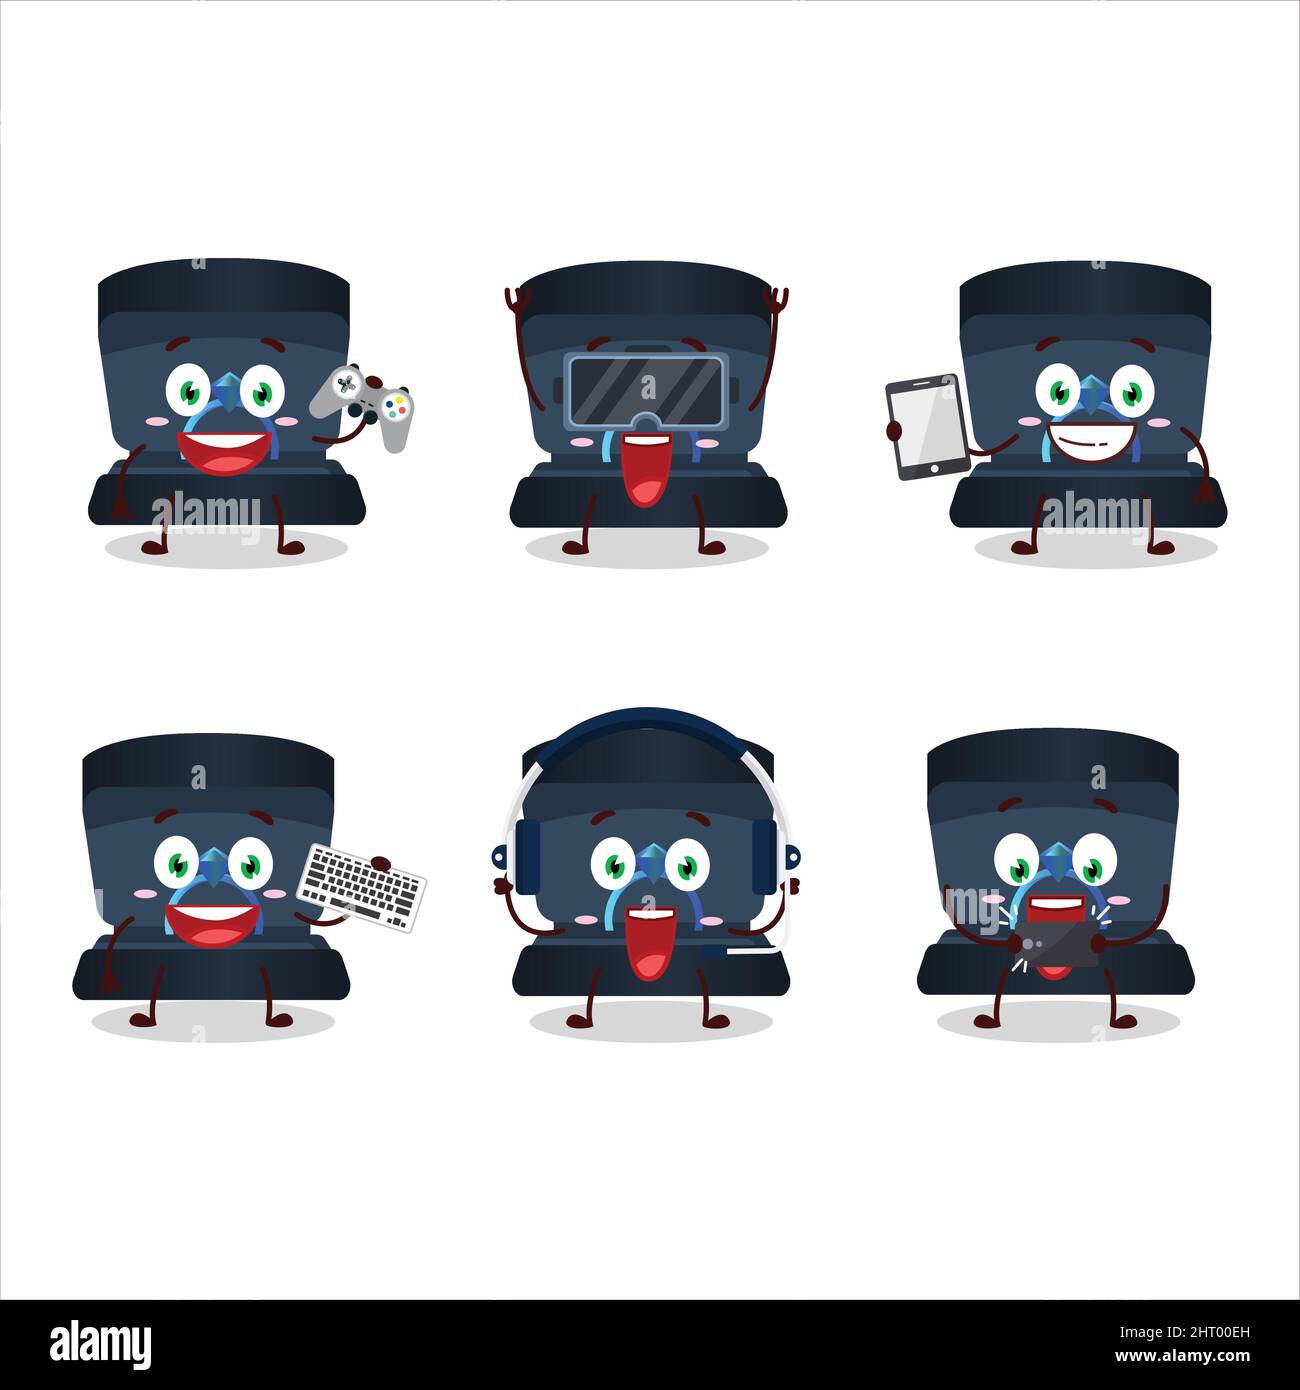 Navy ring Box personnage de dessin animé jouent à des jeux avec divers émoticônes mignons. Illustration vectorielle Illustration de Vecteur